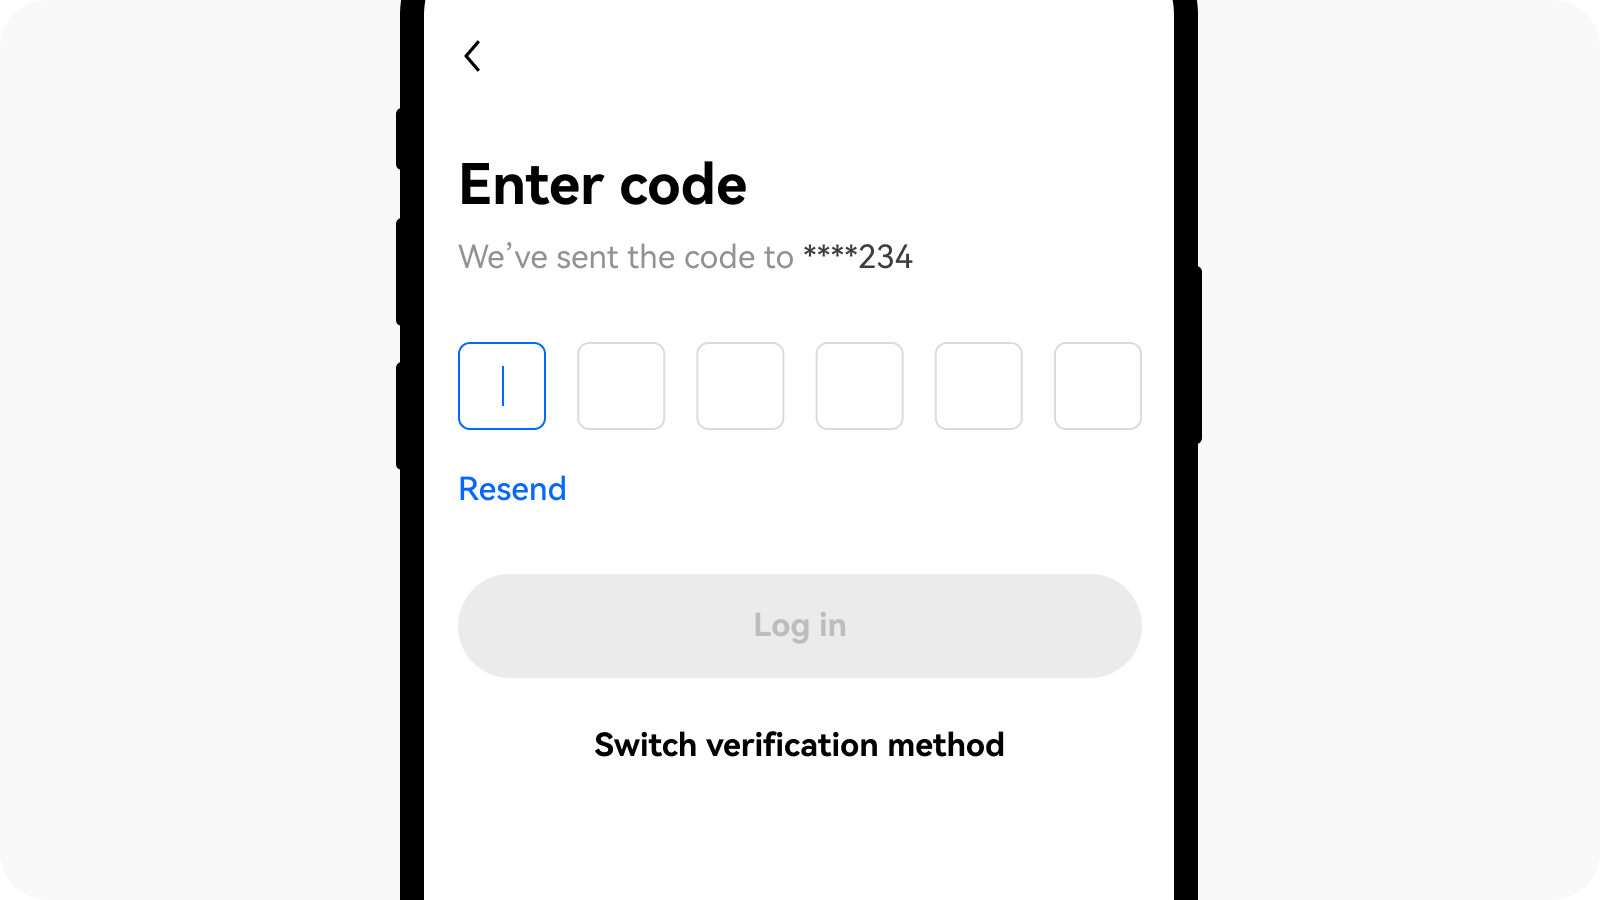 Enter Code via phone in App